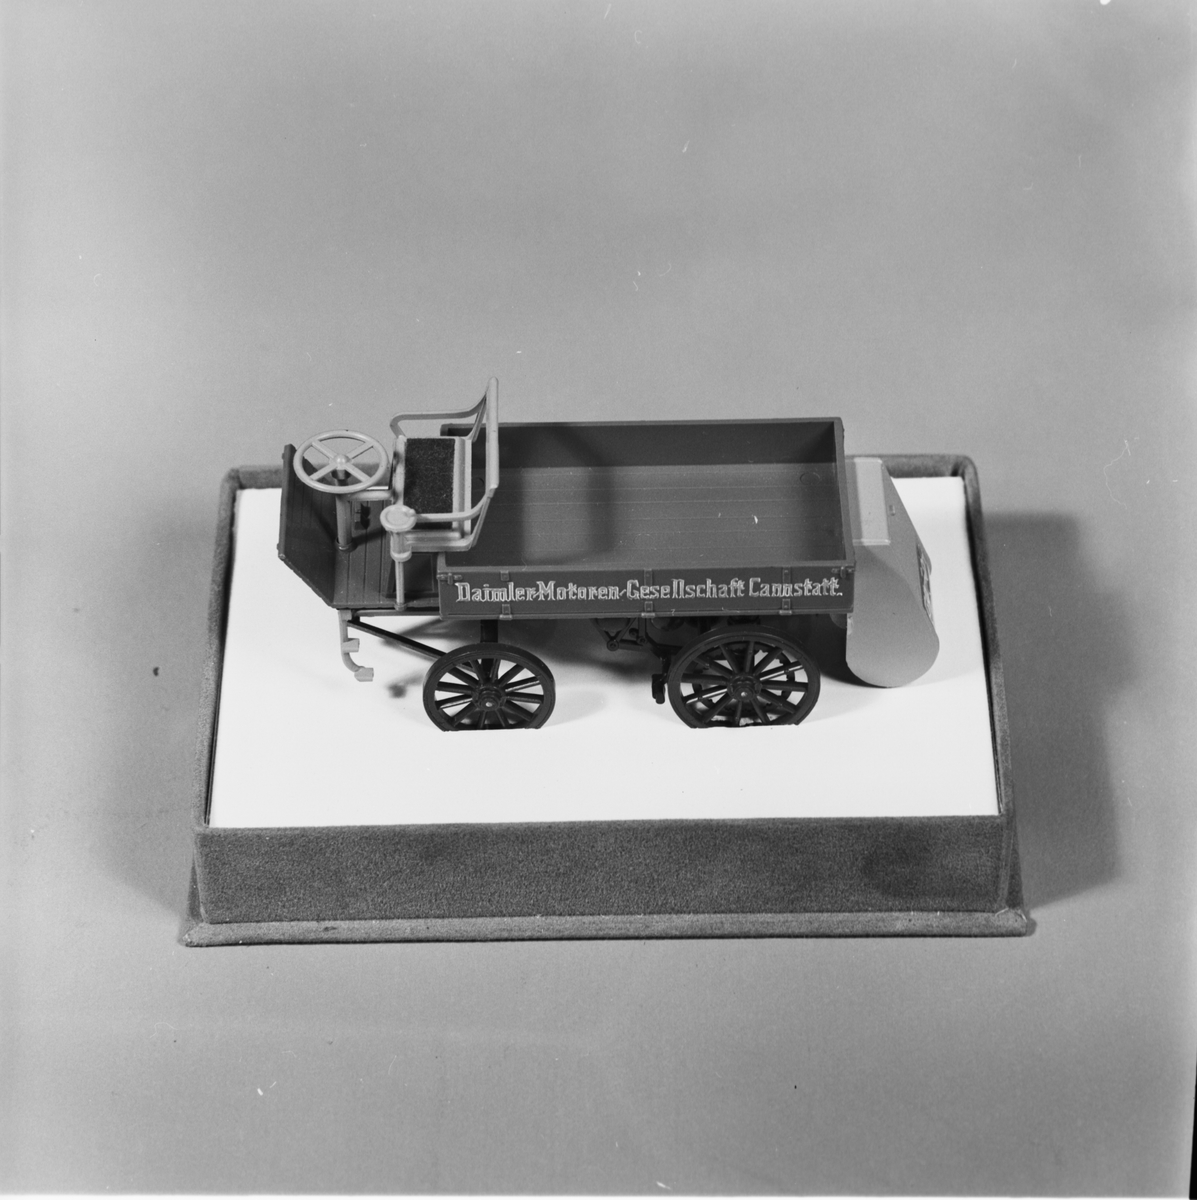 Modell av lastbil, gjuten i plast, beigefärgad med bruna hjul och svart chassi, flaklemmar med text. Hölje av plast. Lastbilens längd: 100 mm, bredd: 35 mm, höjd: 35 mm. Höljets längd: 120 mm, bredd: 85 mm, höjd: 68 mm. Märke: Daimler. Årgång: 1896.